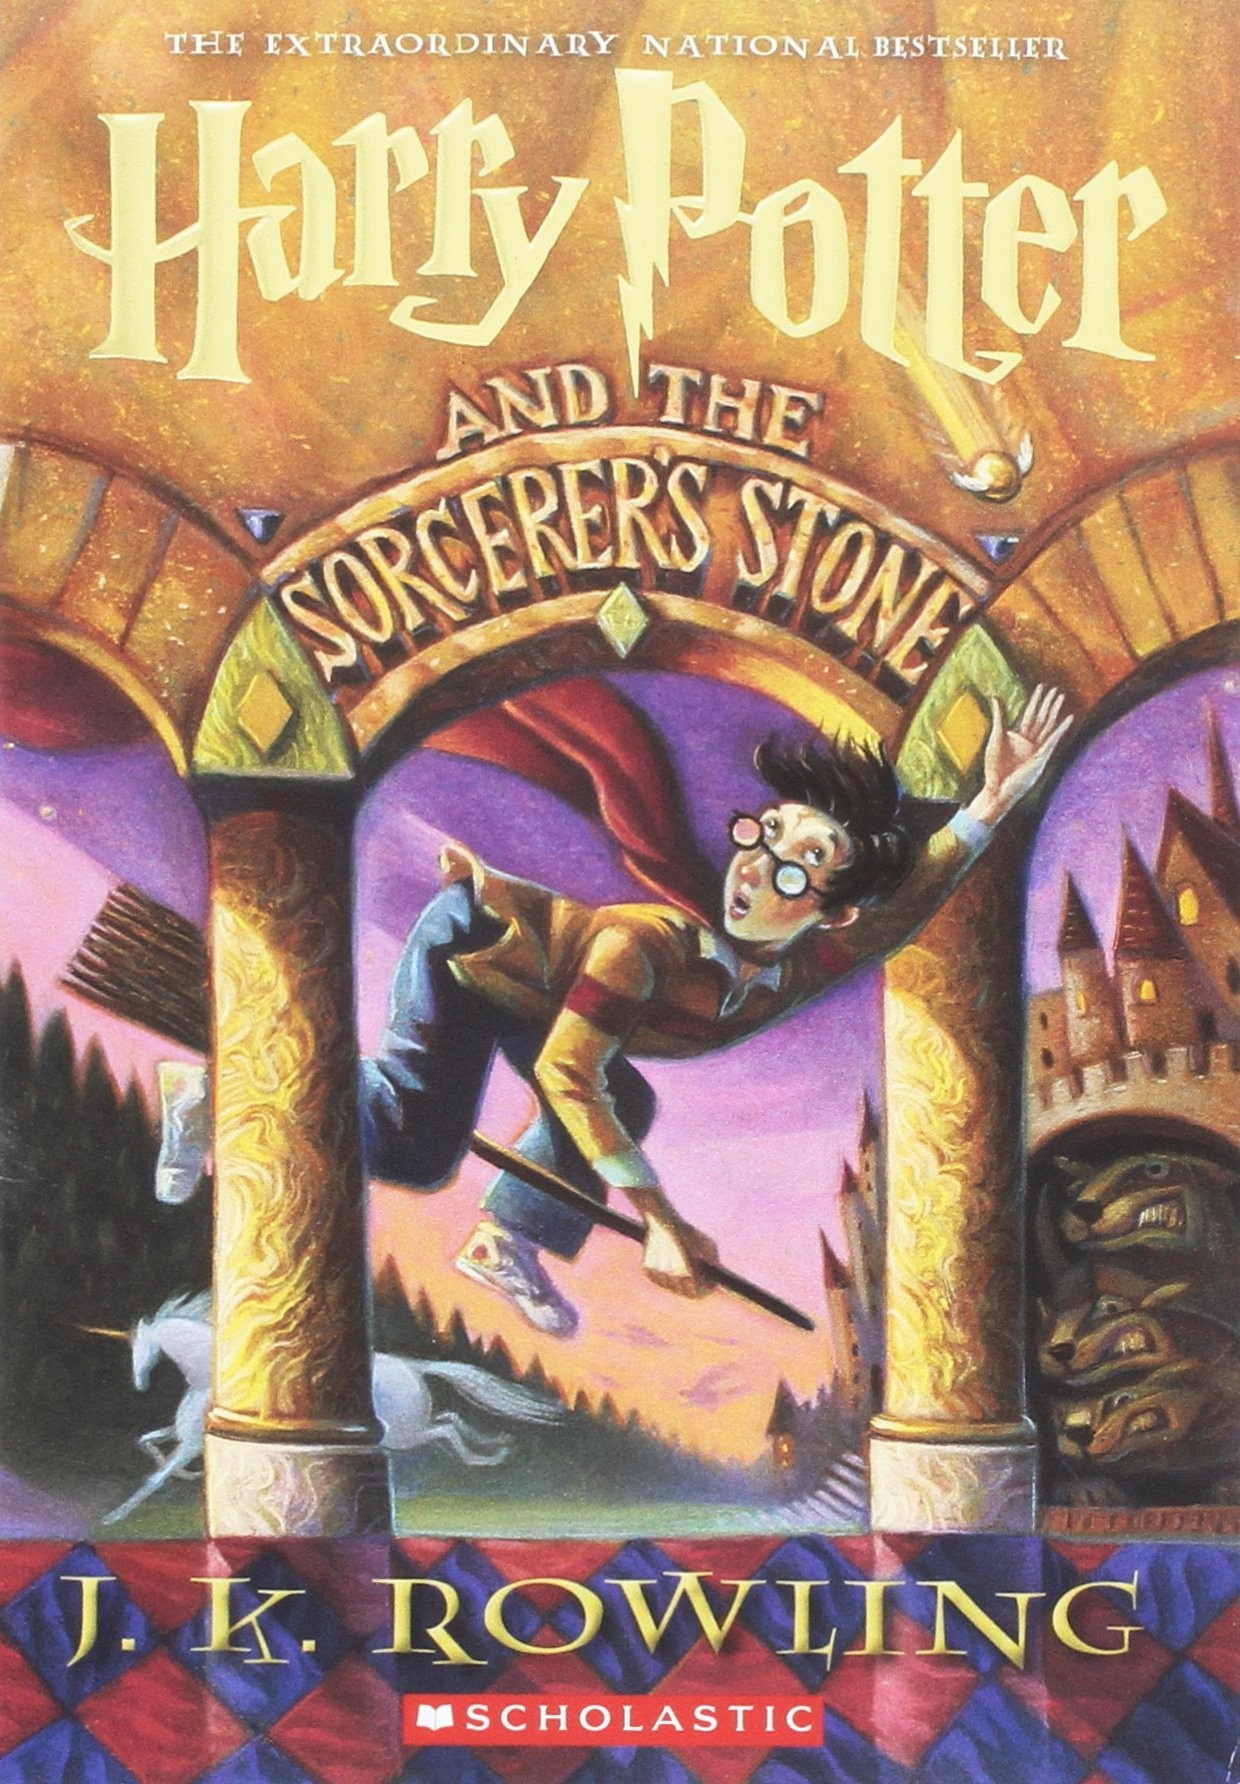 ФАКТ НА ДЕНОТ: Како настанала книгата  „Хари Потер и каменот на мудроста“?